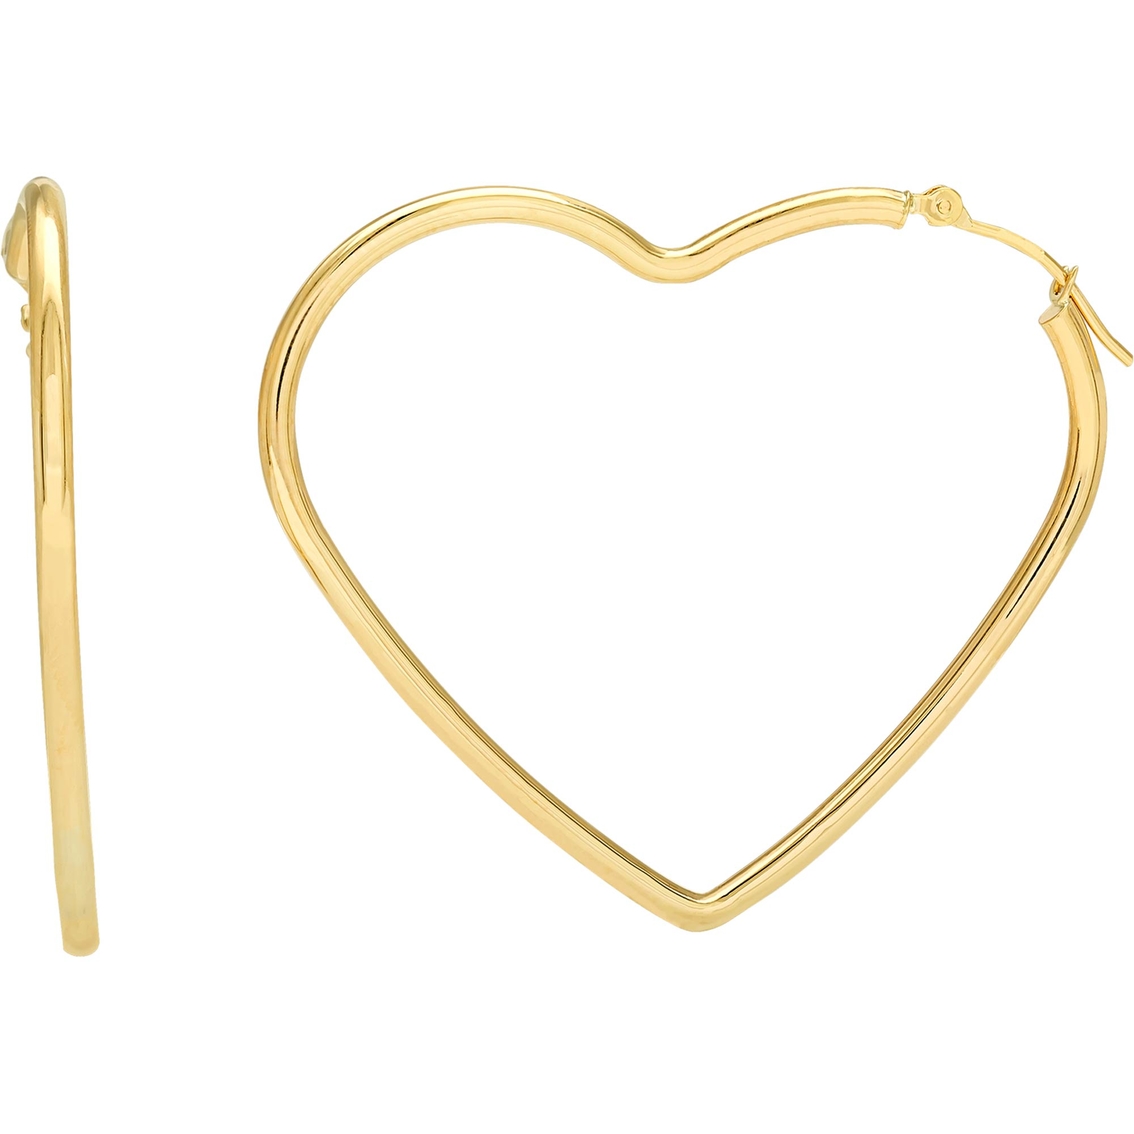 12mm x 15mm 14k Yellow Gold Hollow Heart Hoop Earrings 